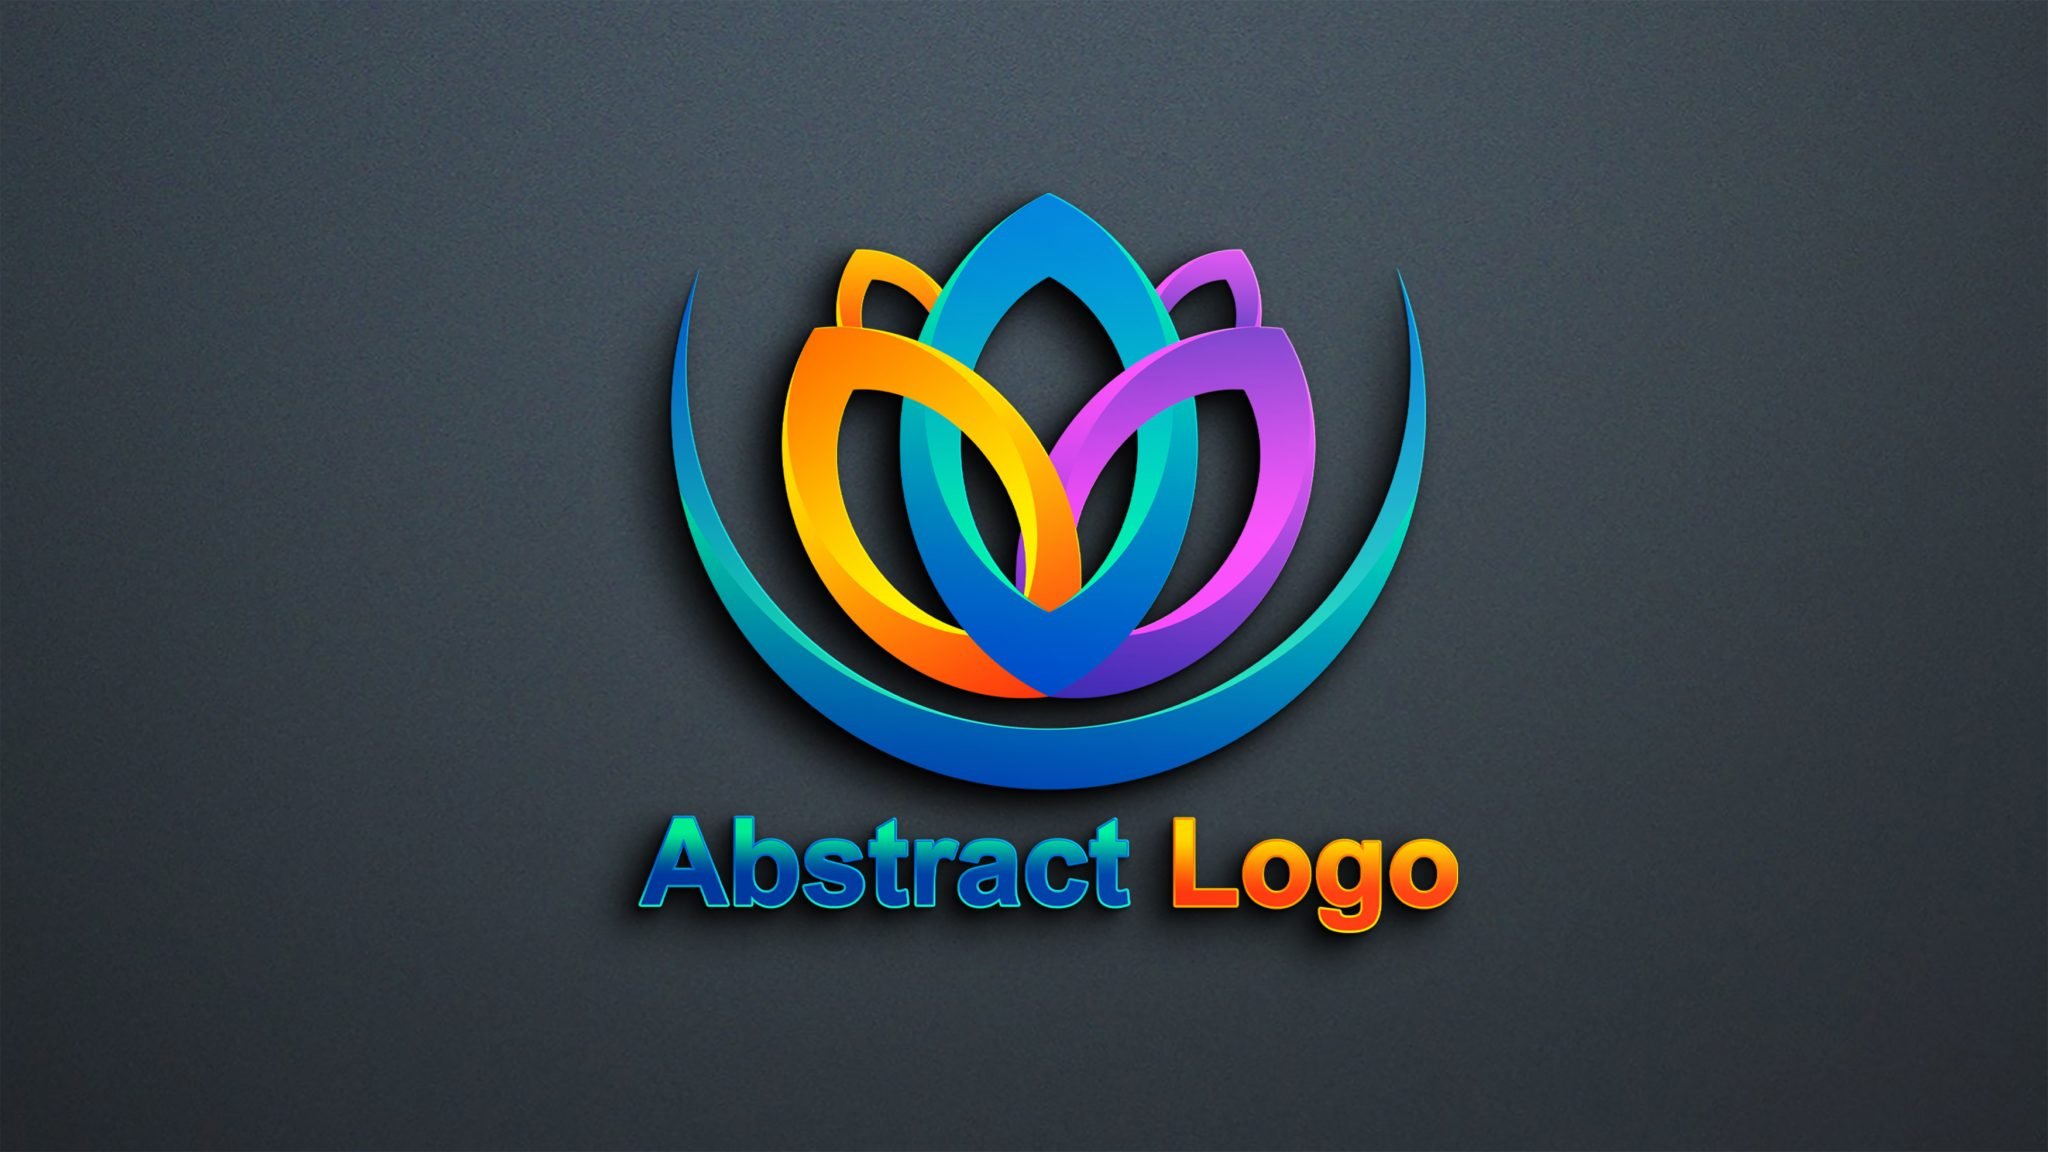 illustrator logo files free download